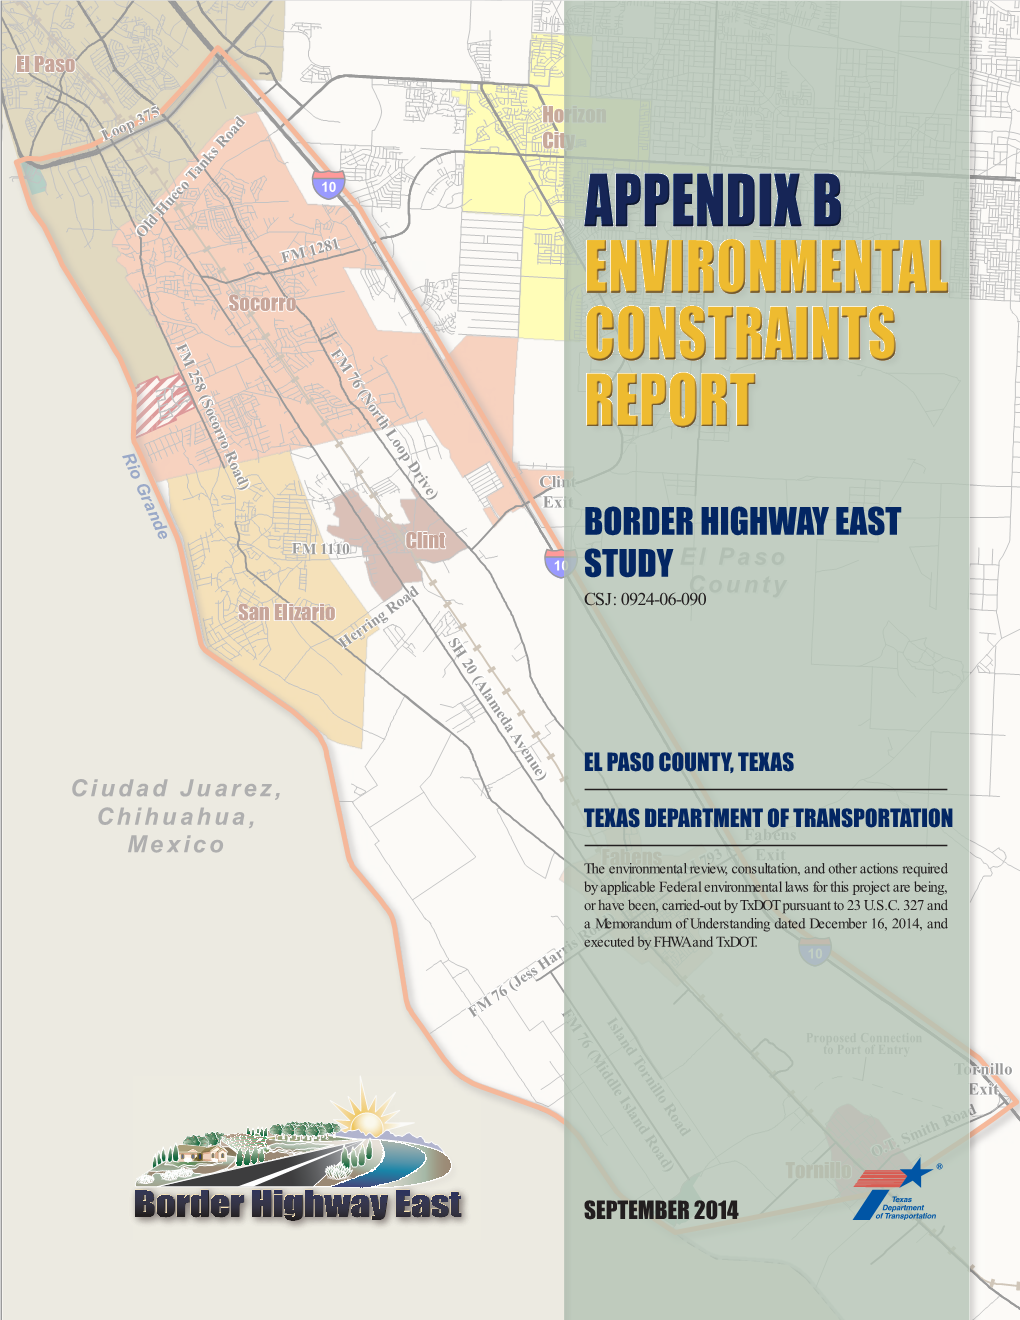 Appendix B: Environmental Constraints Report